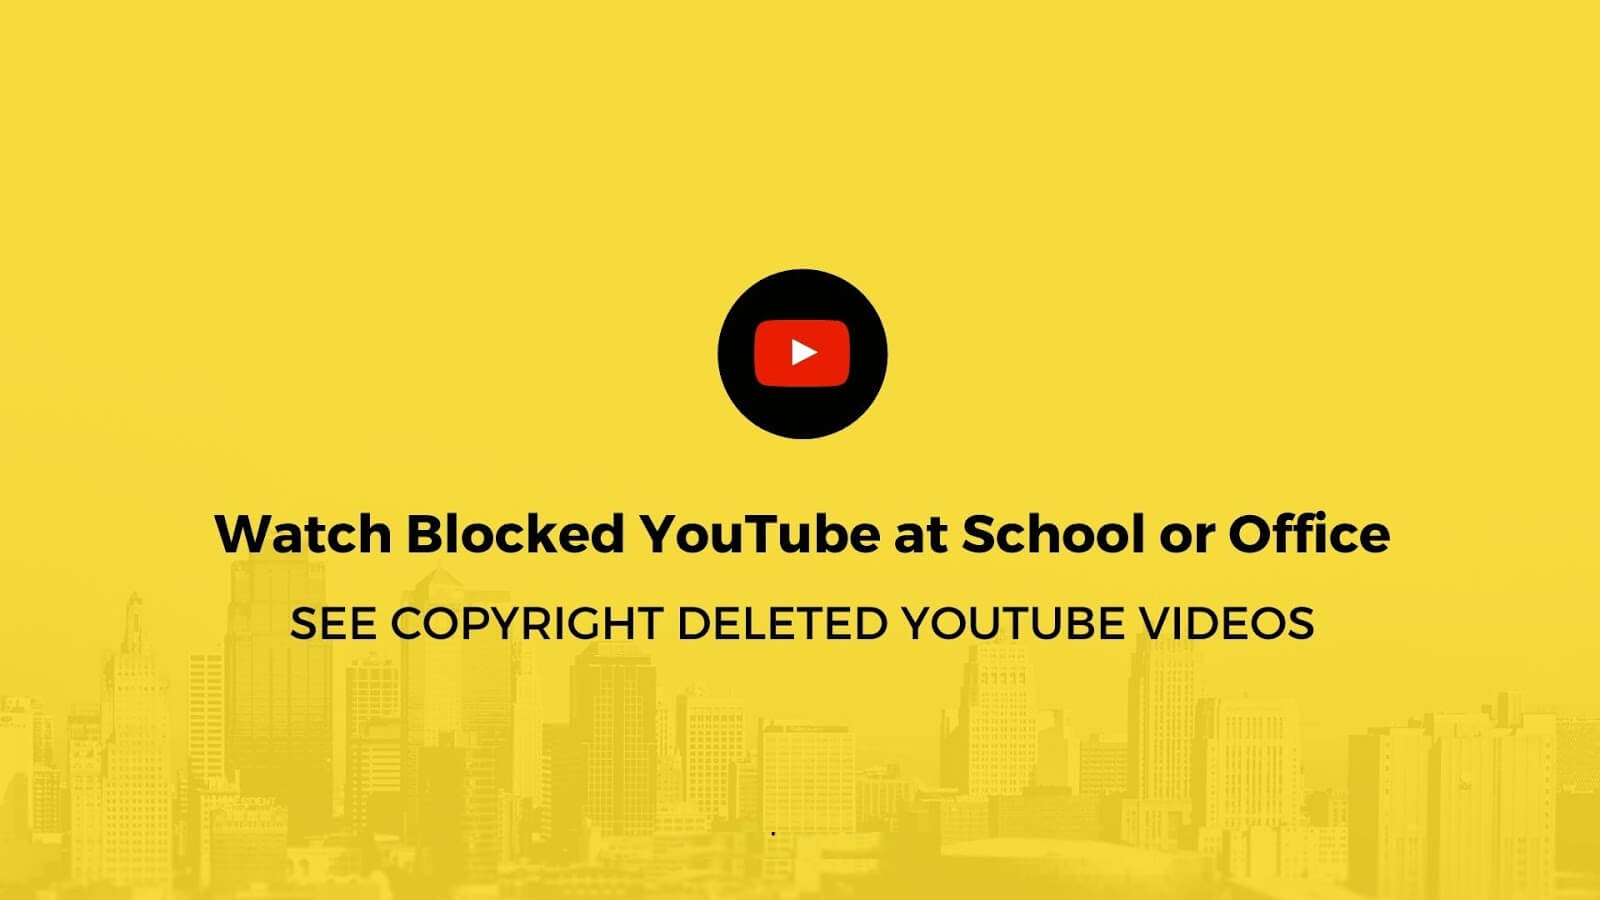 شاهد مقاطع فيديو YouTube المحظورة بموجب حقوق الطبع والنشر (في المدرسة أو المكتب) - %categories